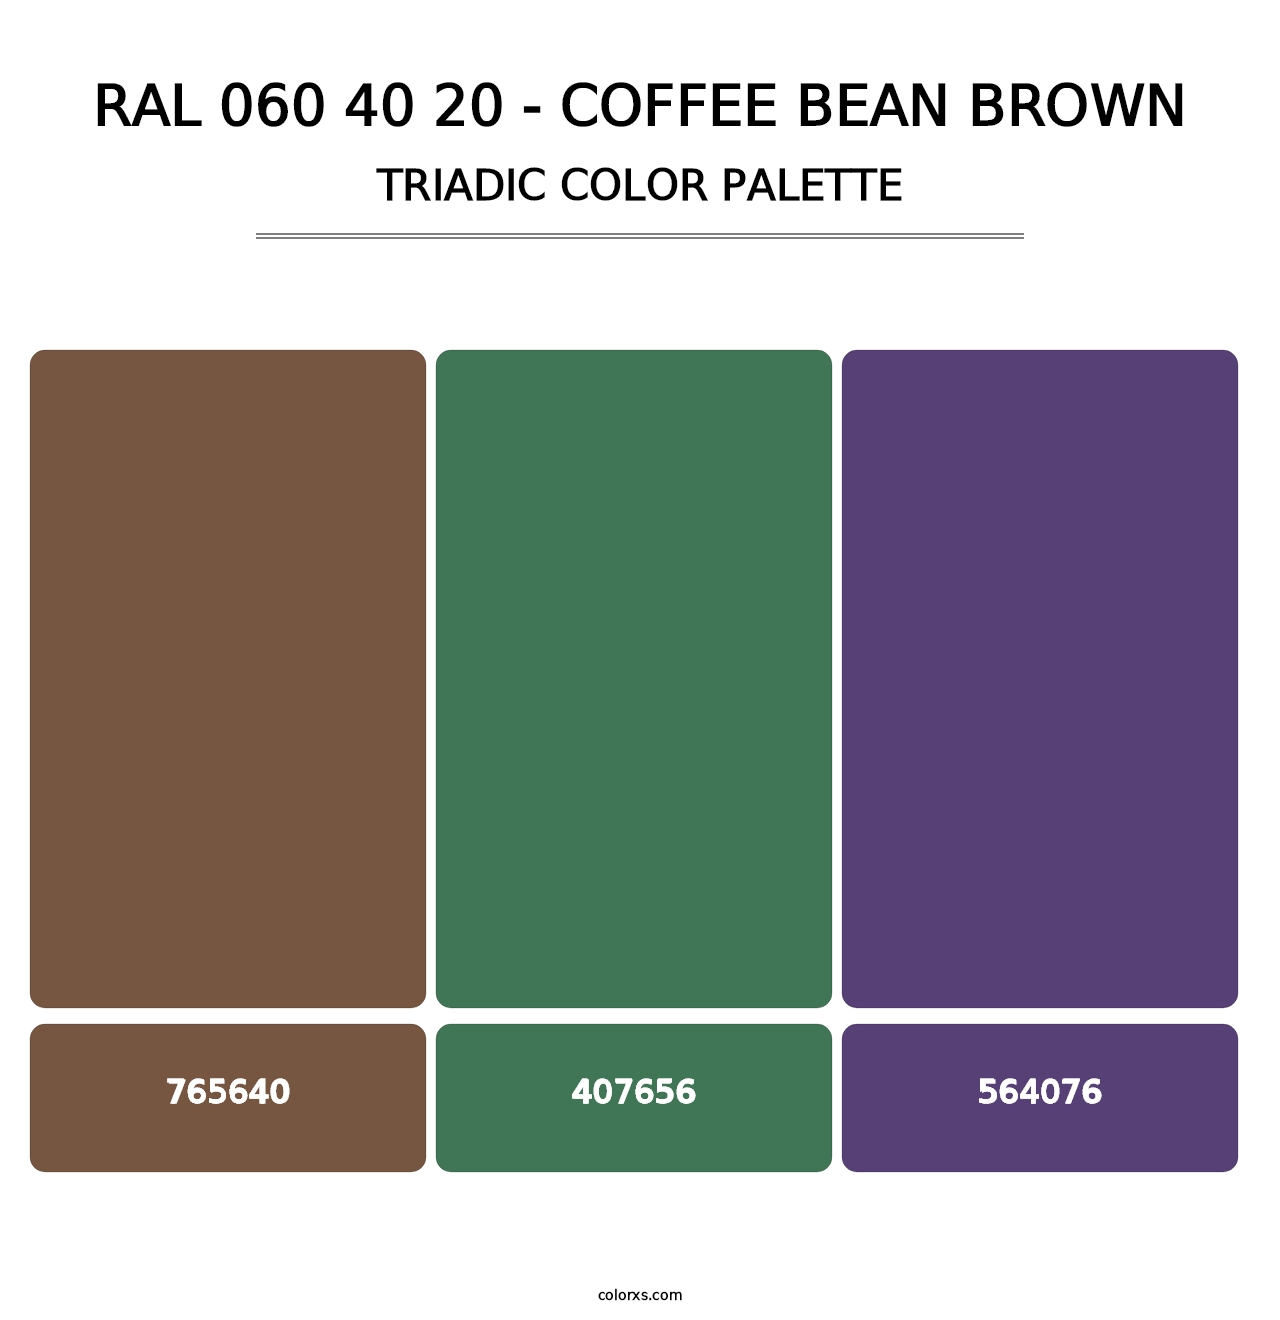 RAL 060 40 20 - Coffee Bean Brown - Triadic Color Palette